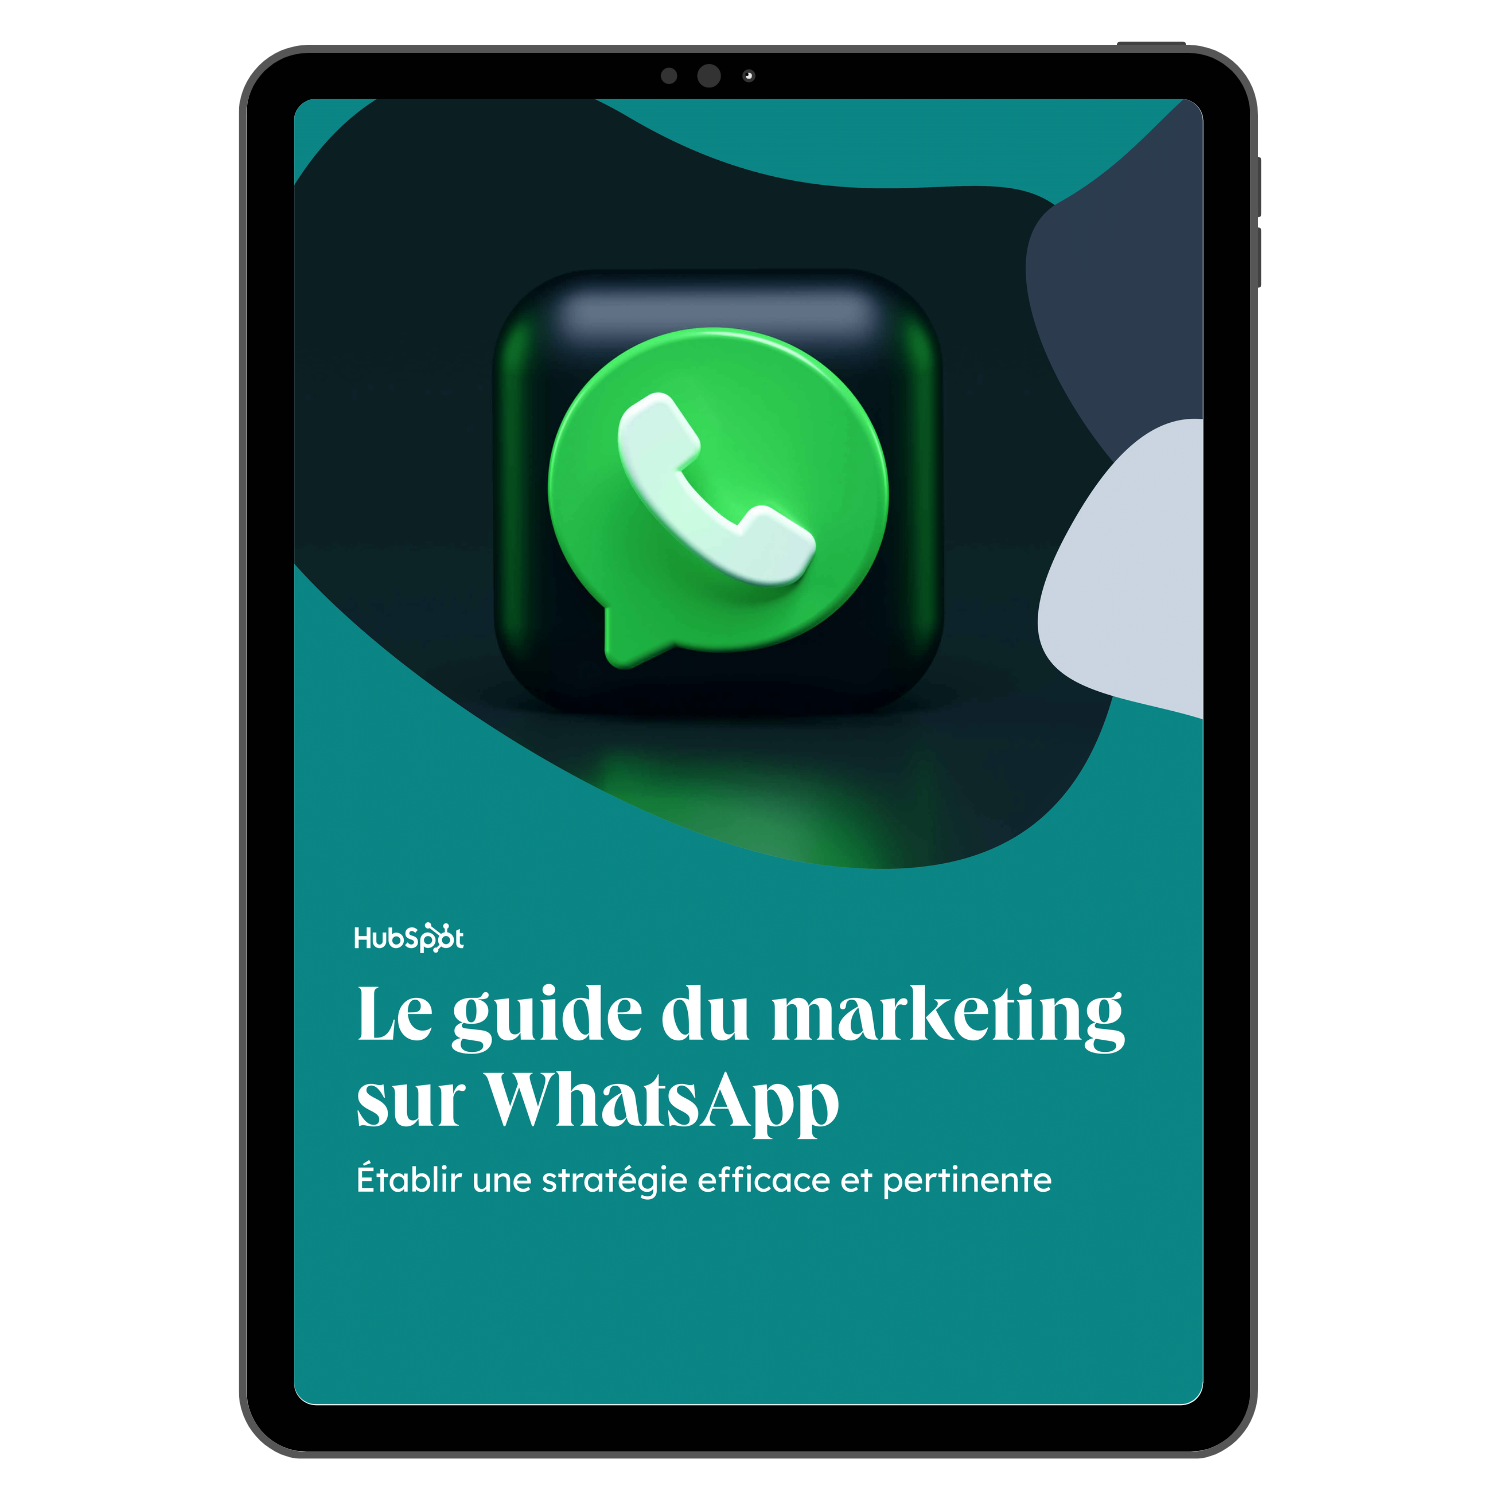 Le guide du marketing sur WhatsApp